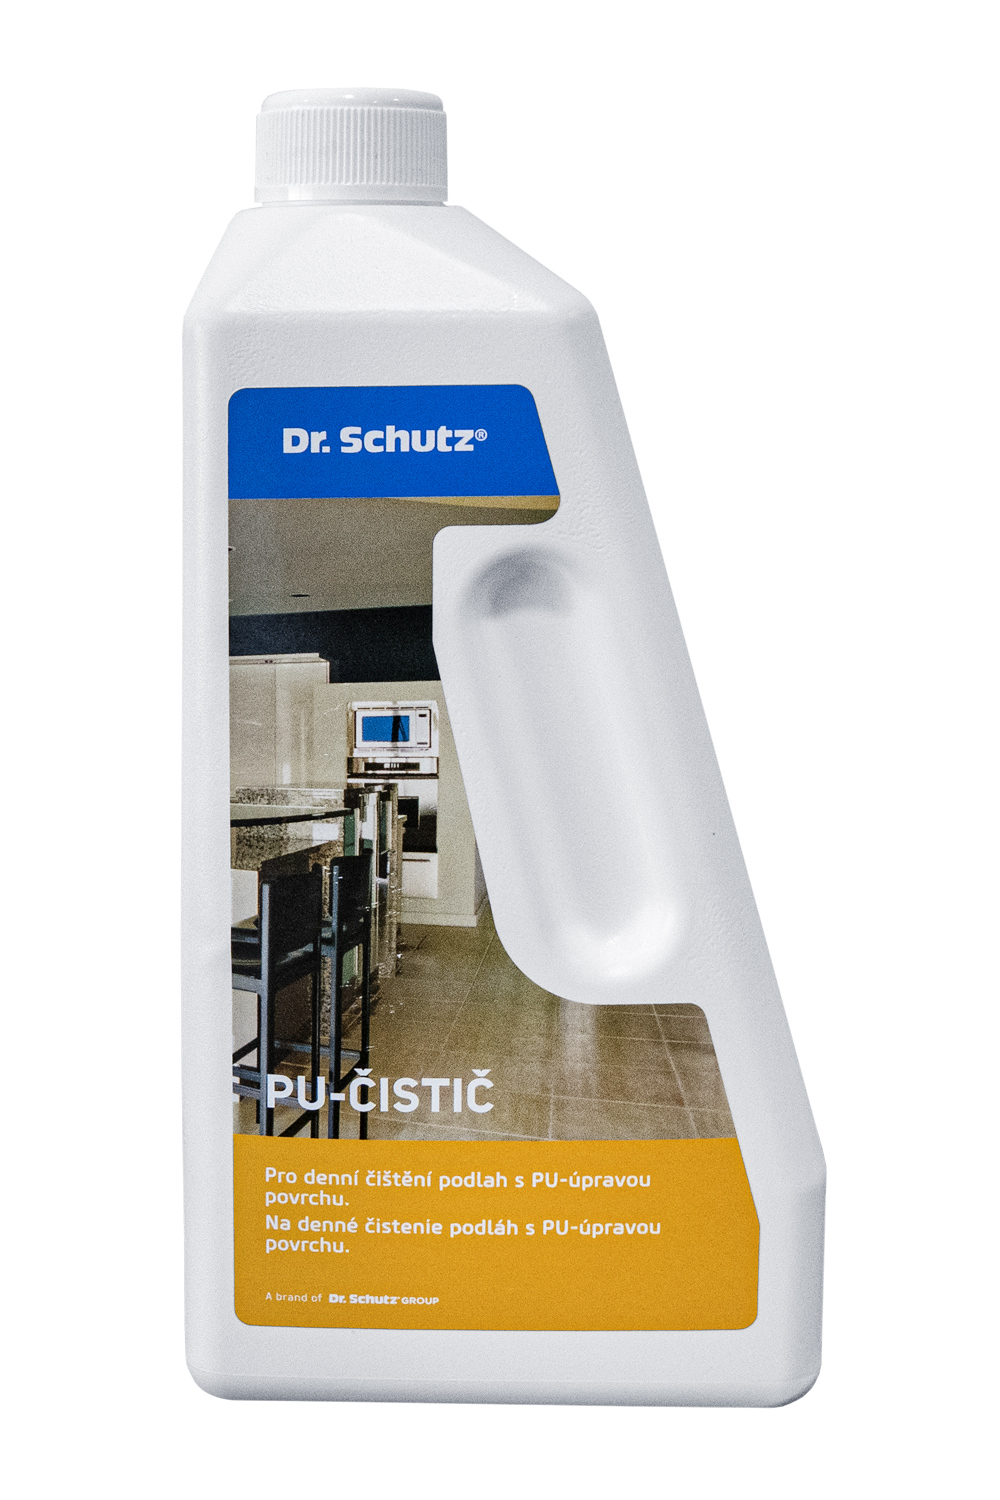 Dr.Schutz - CC Základný čistiaci prípravok R